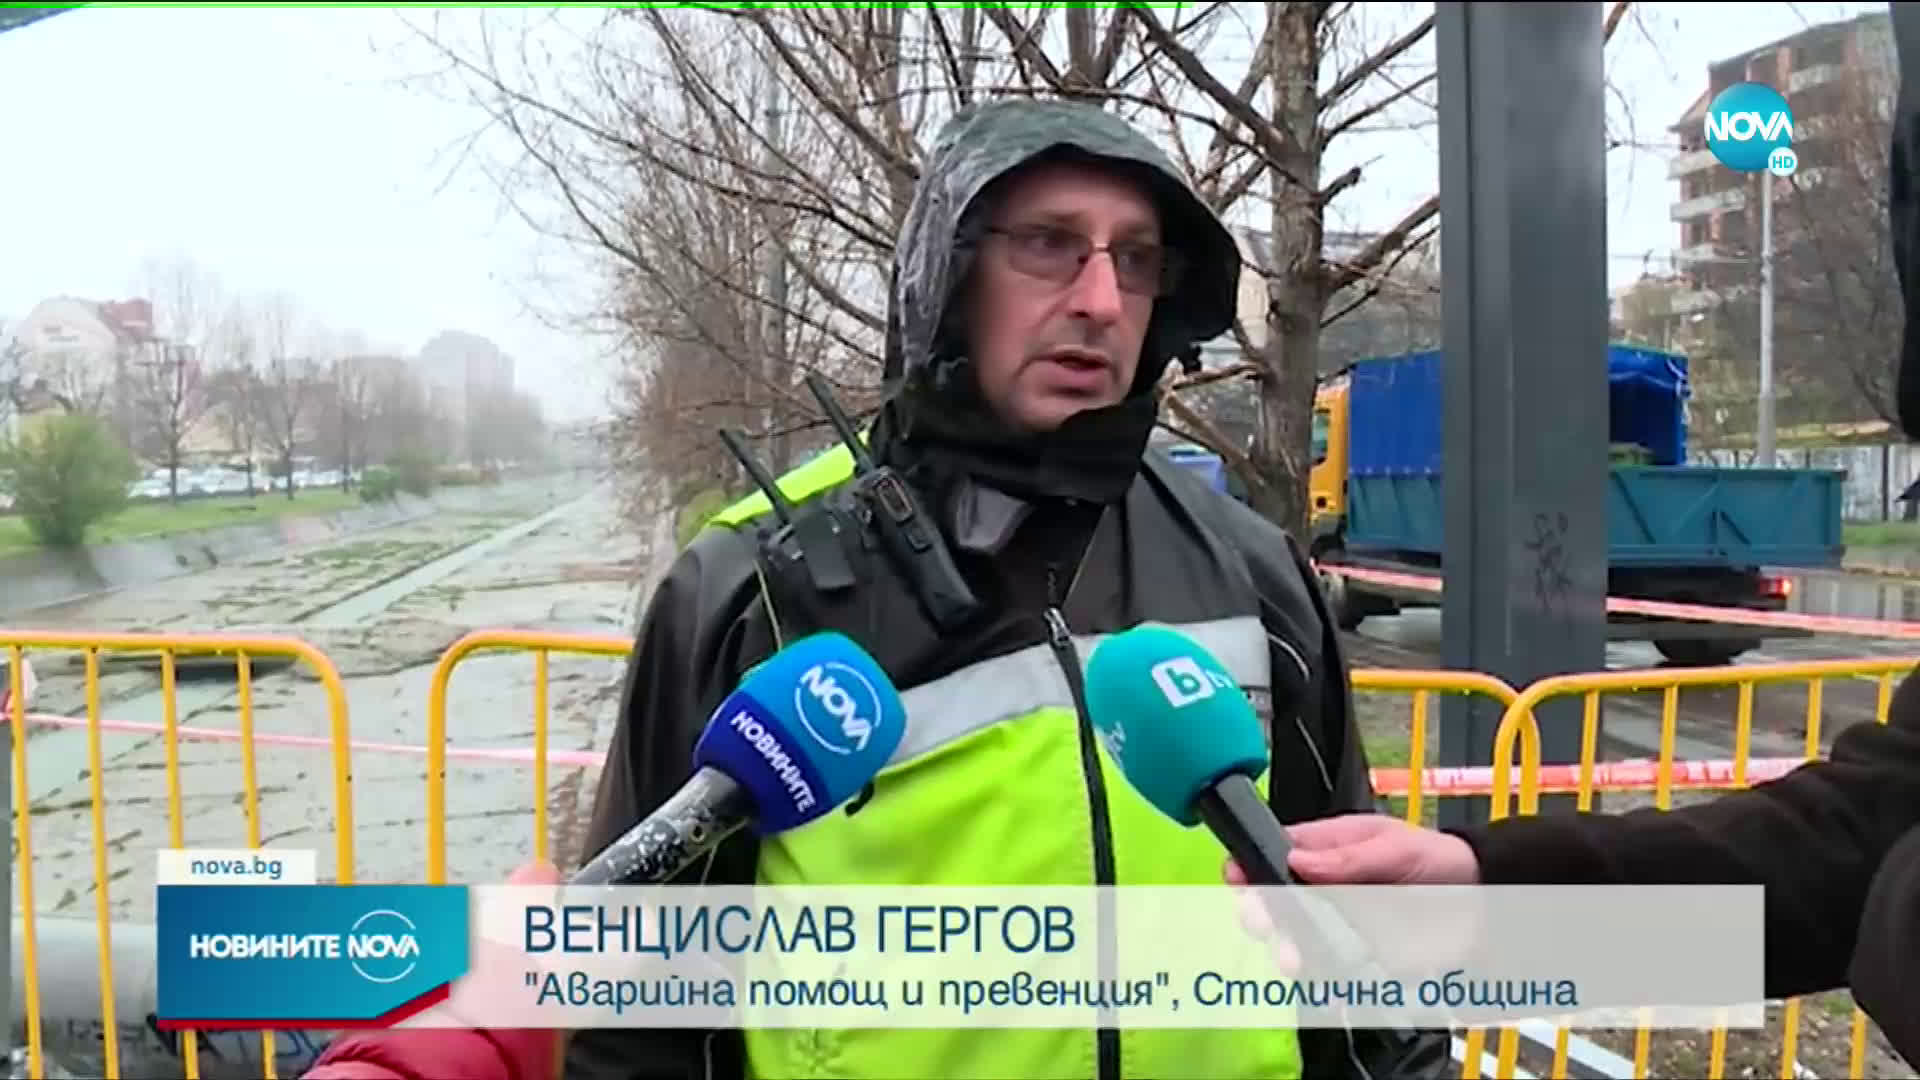 Такси падна в коритото на река в София, има ранен